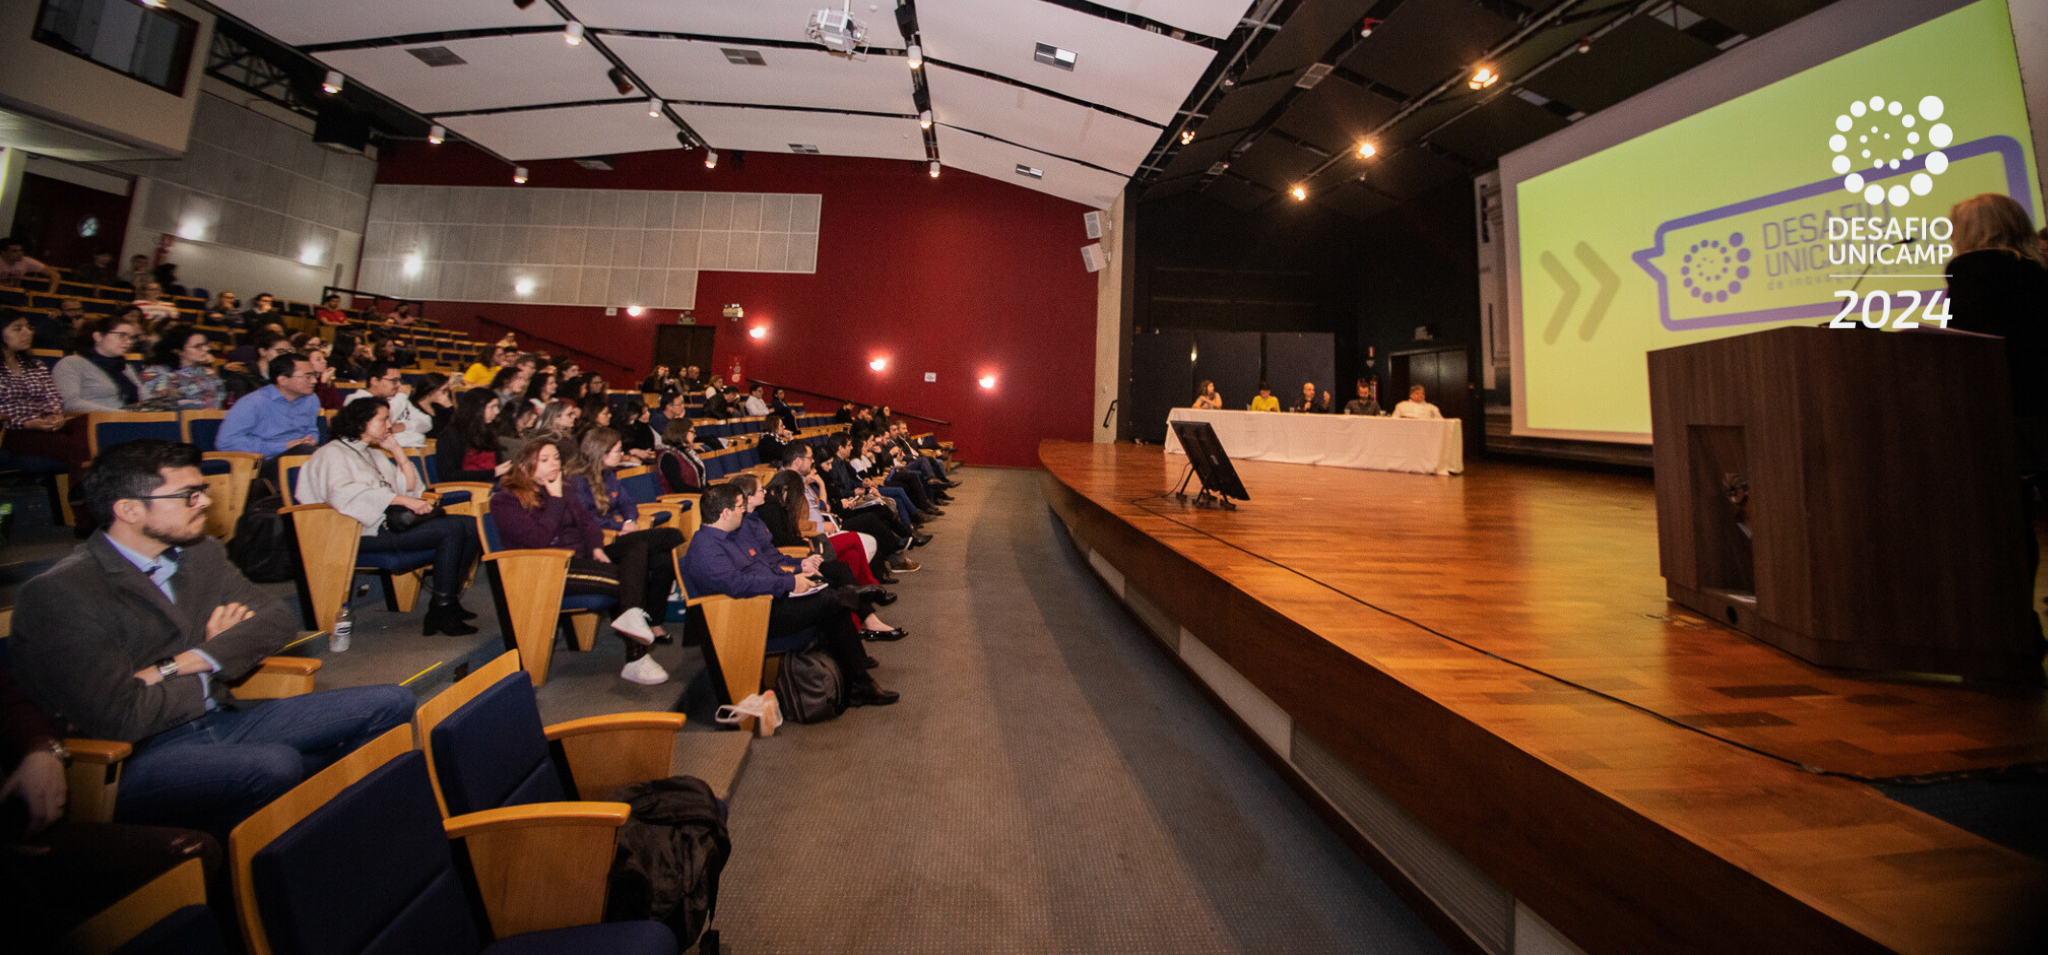 Na imagem, auditório utilizado na final de uma edição anterior do Desafio Unicamp 2024 com o publico à esquerda e o palco à direita.